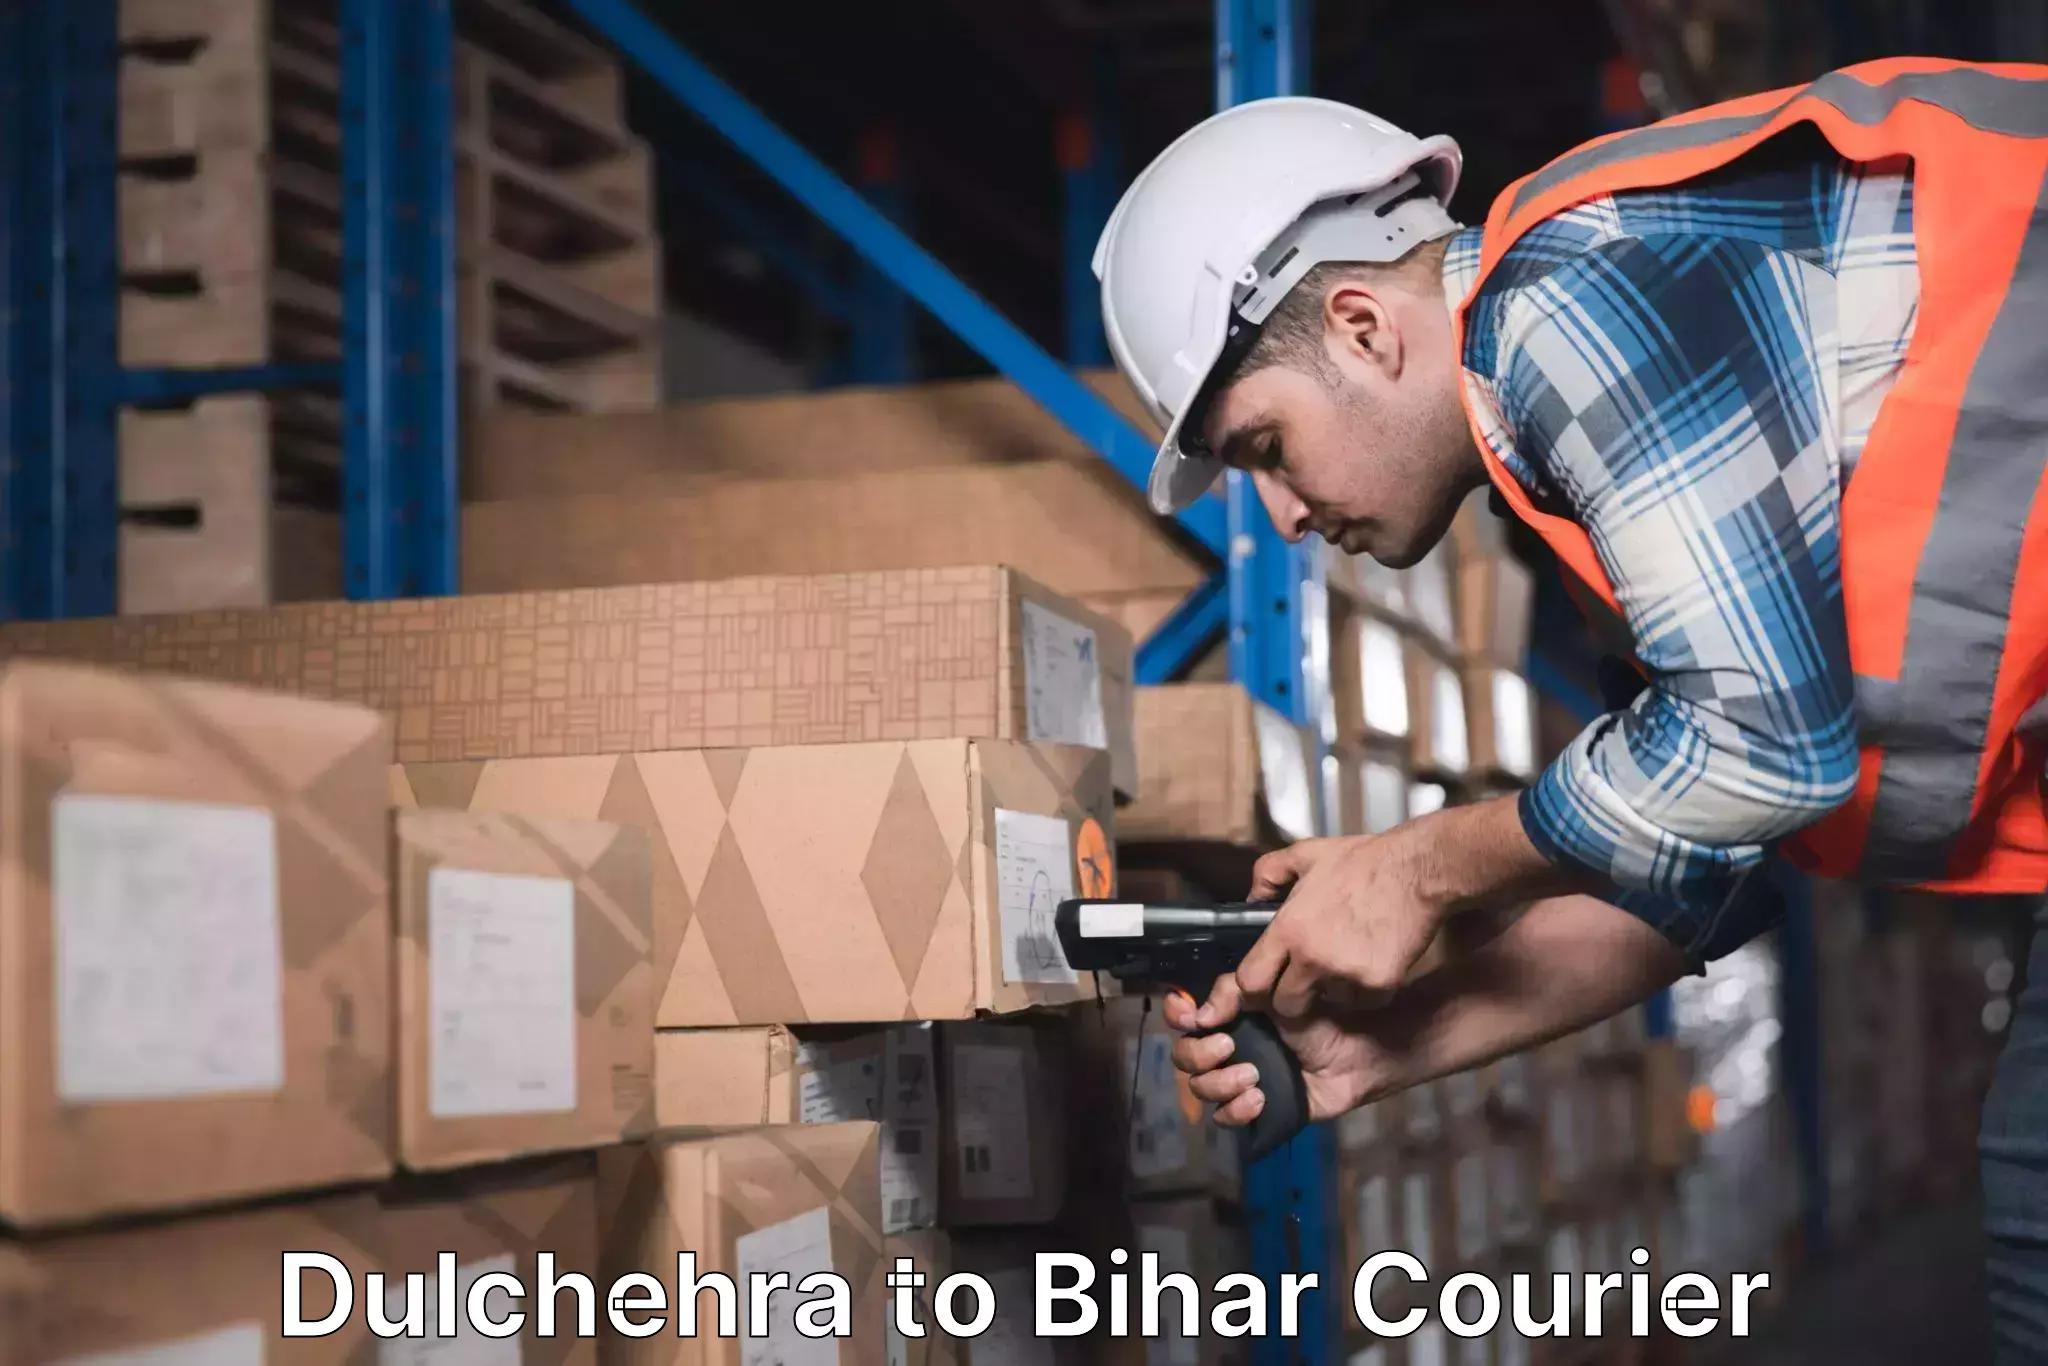 Cargo courier service Dulchehra to Vaishali